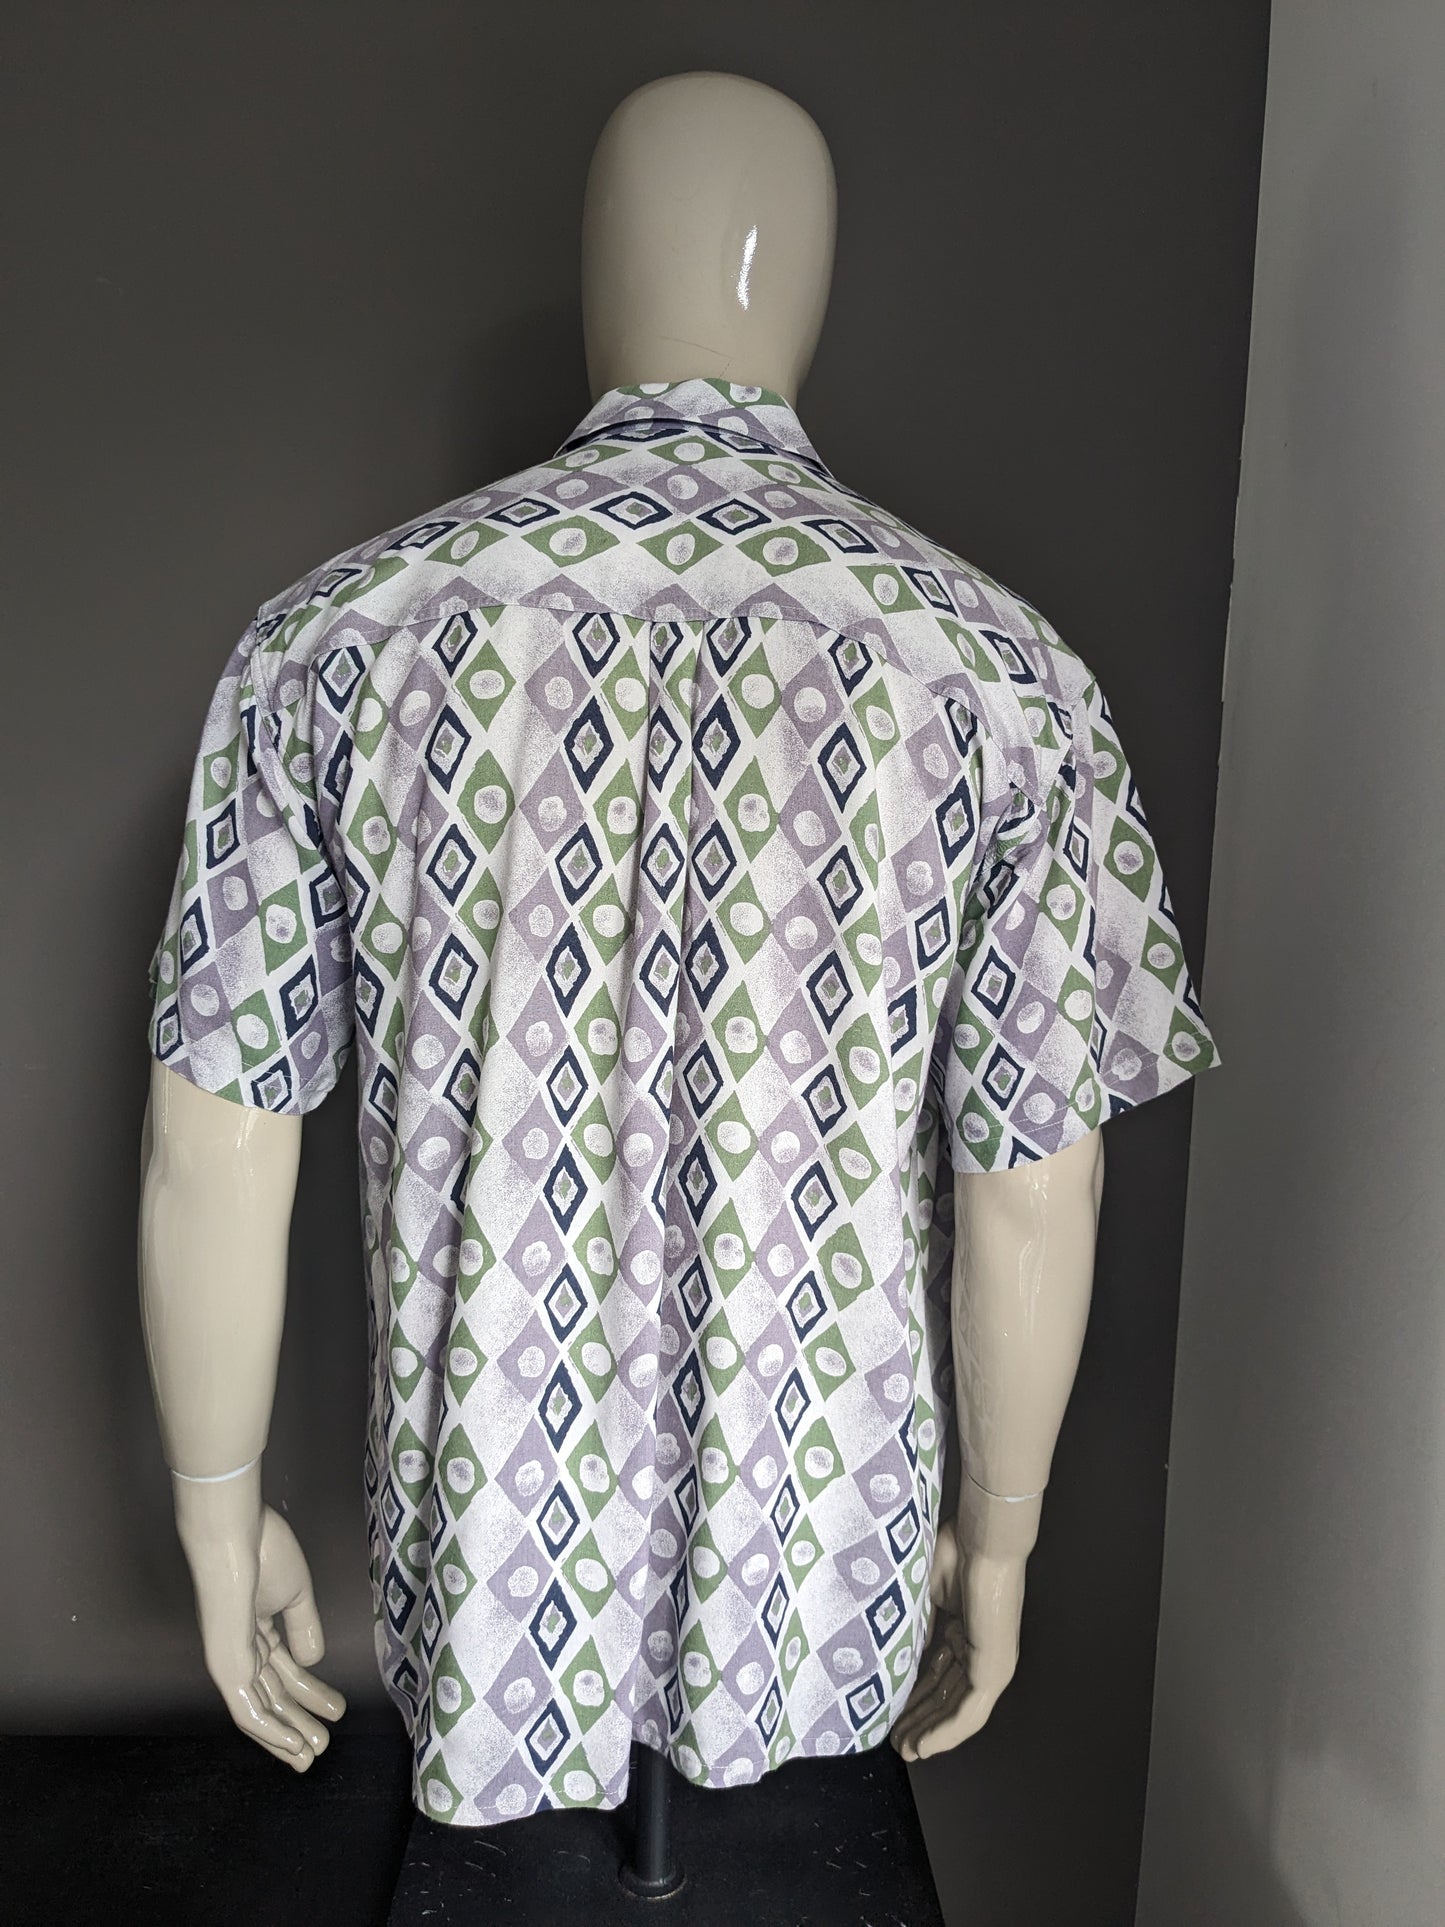 Vintage 80's - 90's J.T.S.L. overhemd korte mouw. Paars Groen Blauwe print. Maat XL.